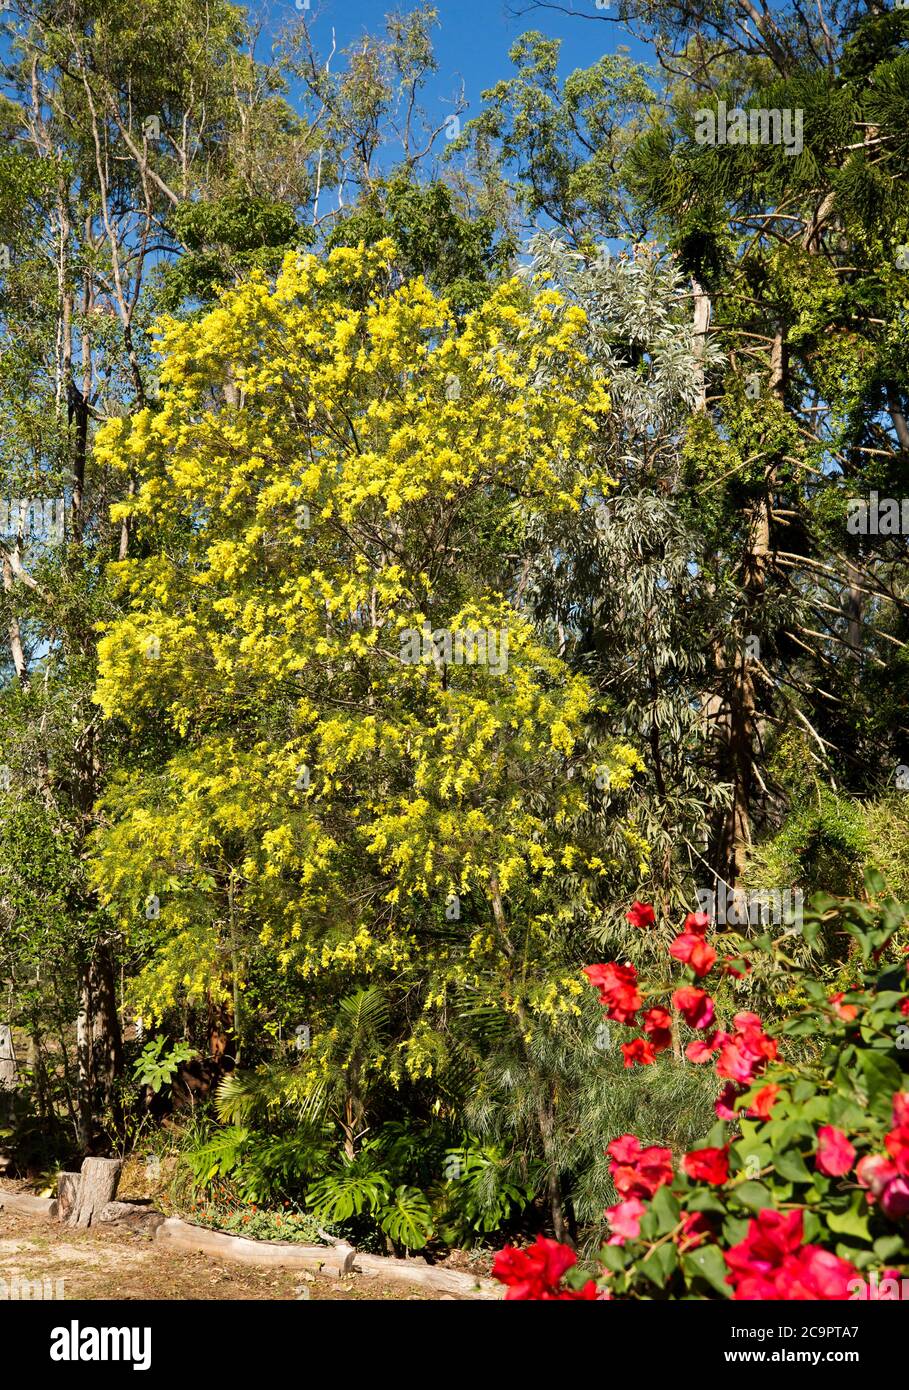 Fimbriata di acacia, Brisbane Wattle, albero australiano nativo coperto con masse di fiori gialli in giardino di macchia sotto il cielo blu Foto Stock